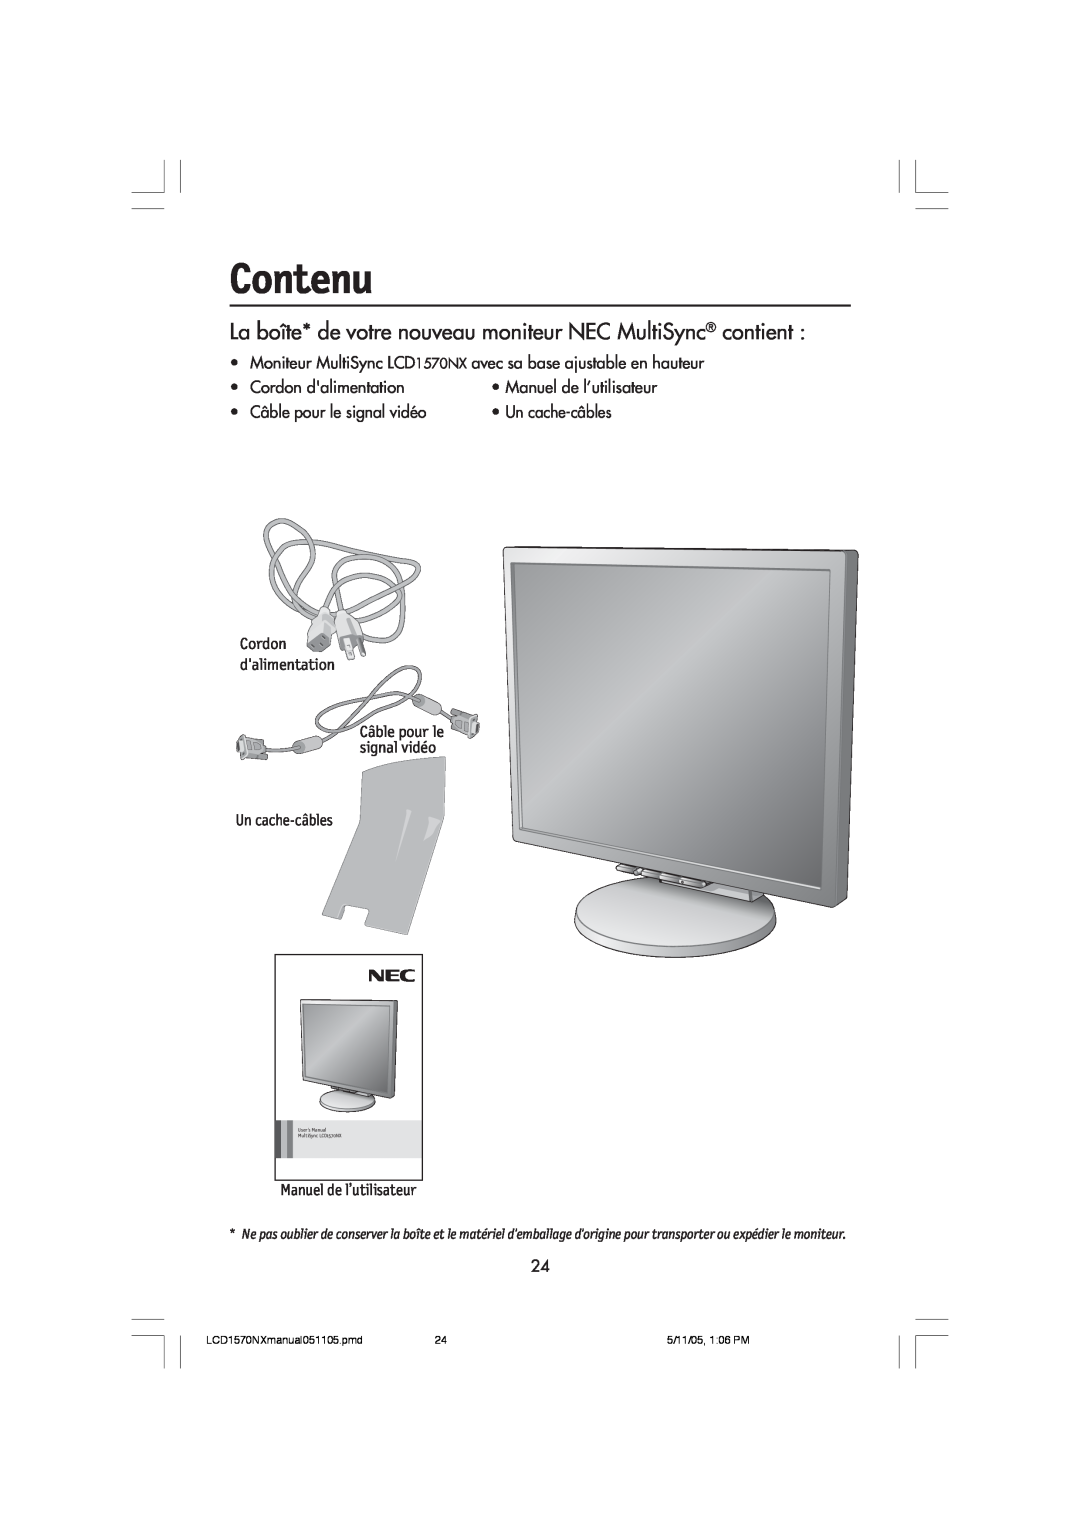 NEC LCD1570NX user manual Contenu, La boîte* de votre nouveau moniteur NEC MultiSync contient, Manuel de l’utilisateur 